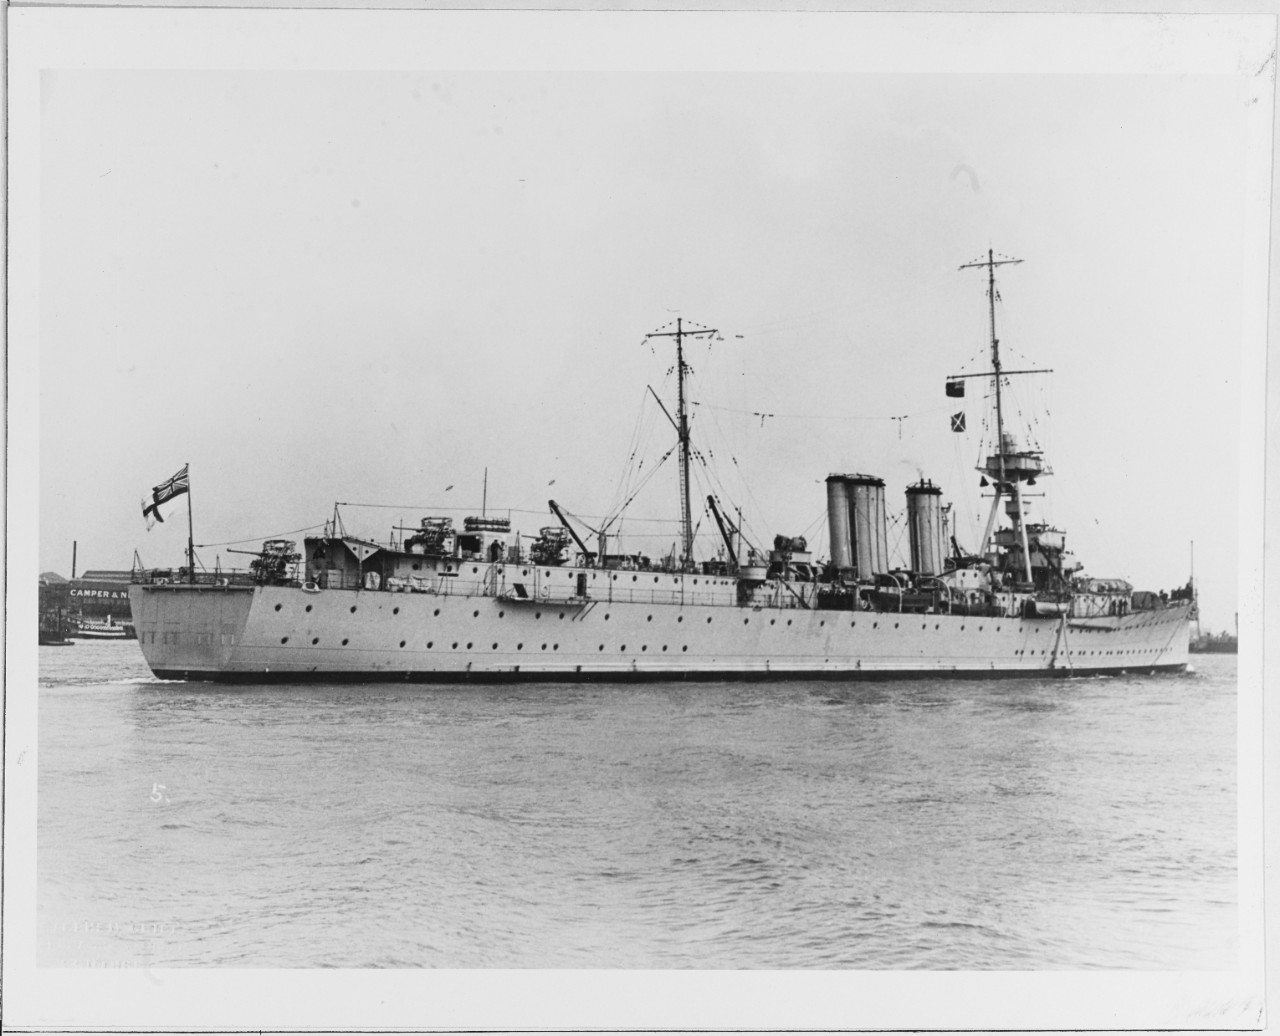 HMS ADVENTURE (British minelayer, 1927)